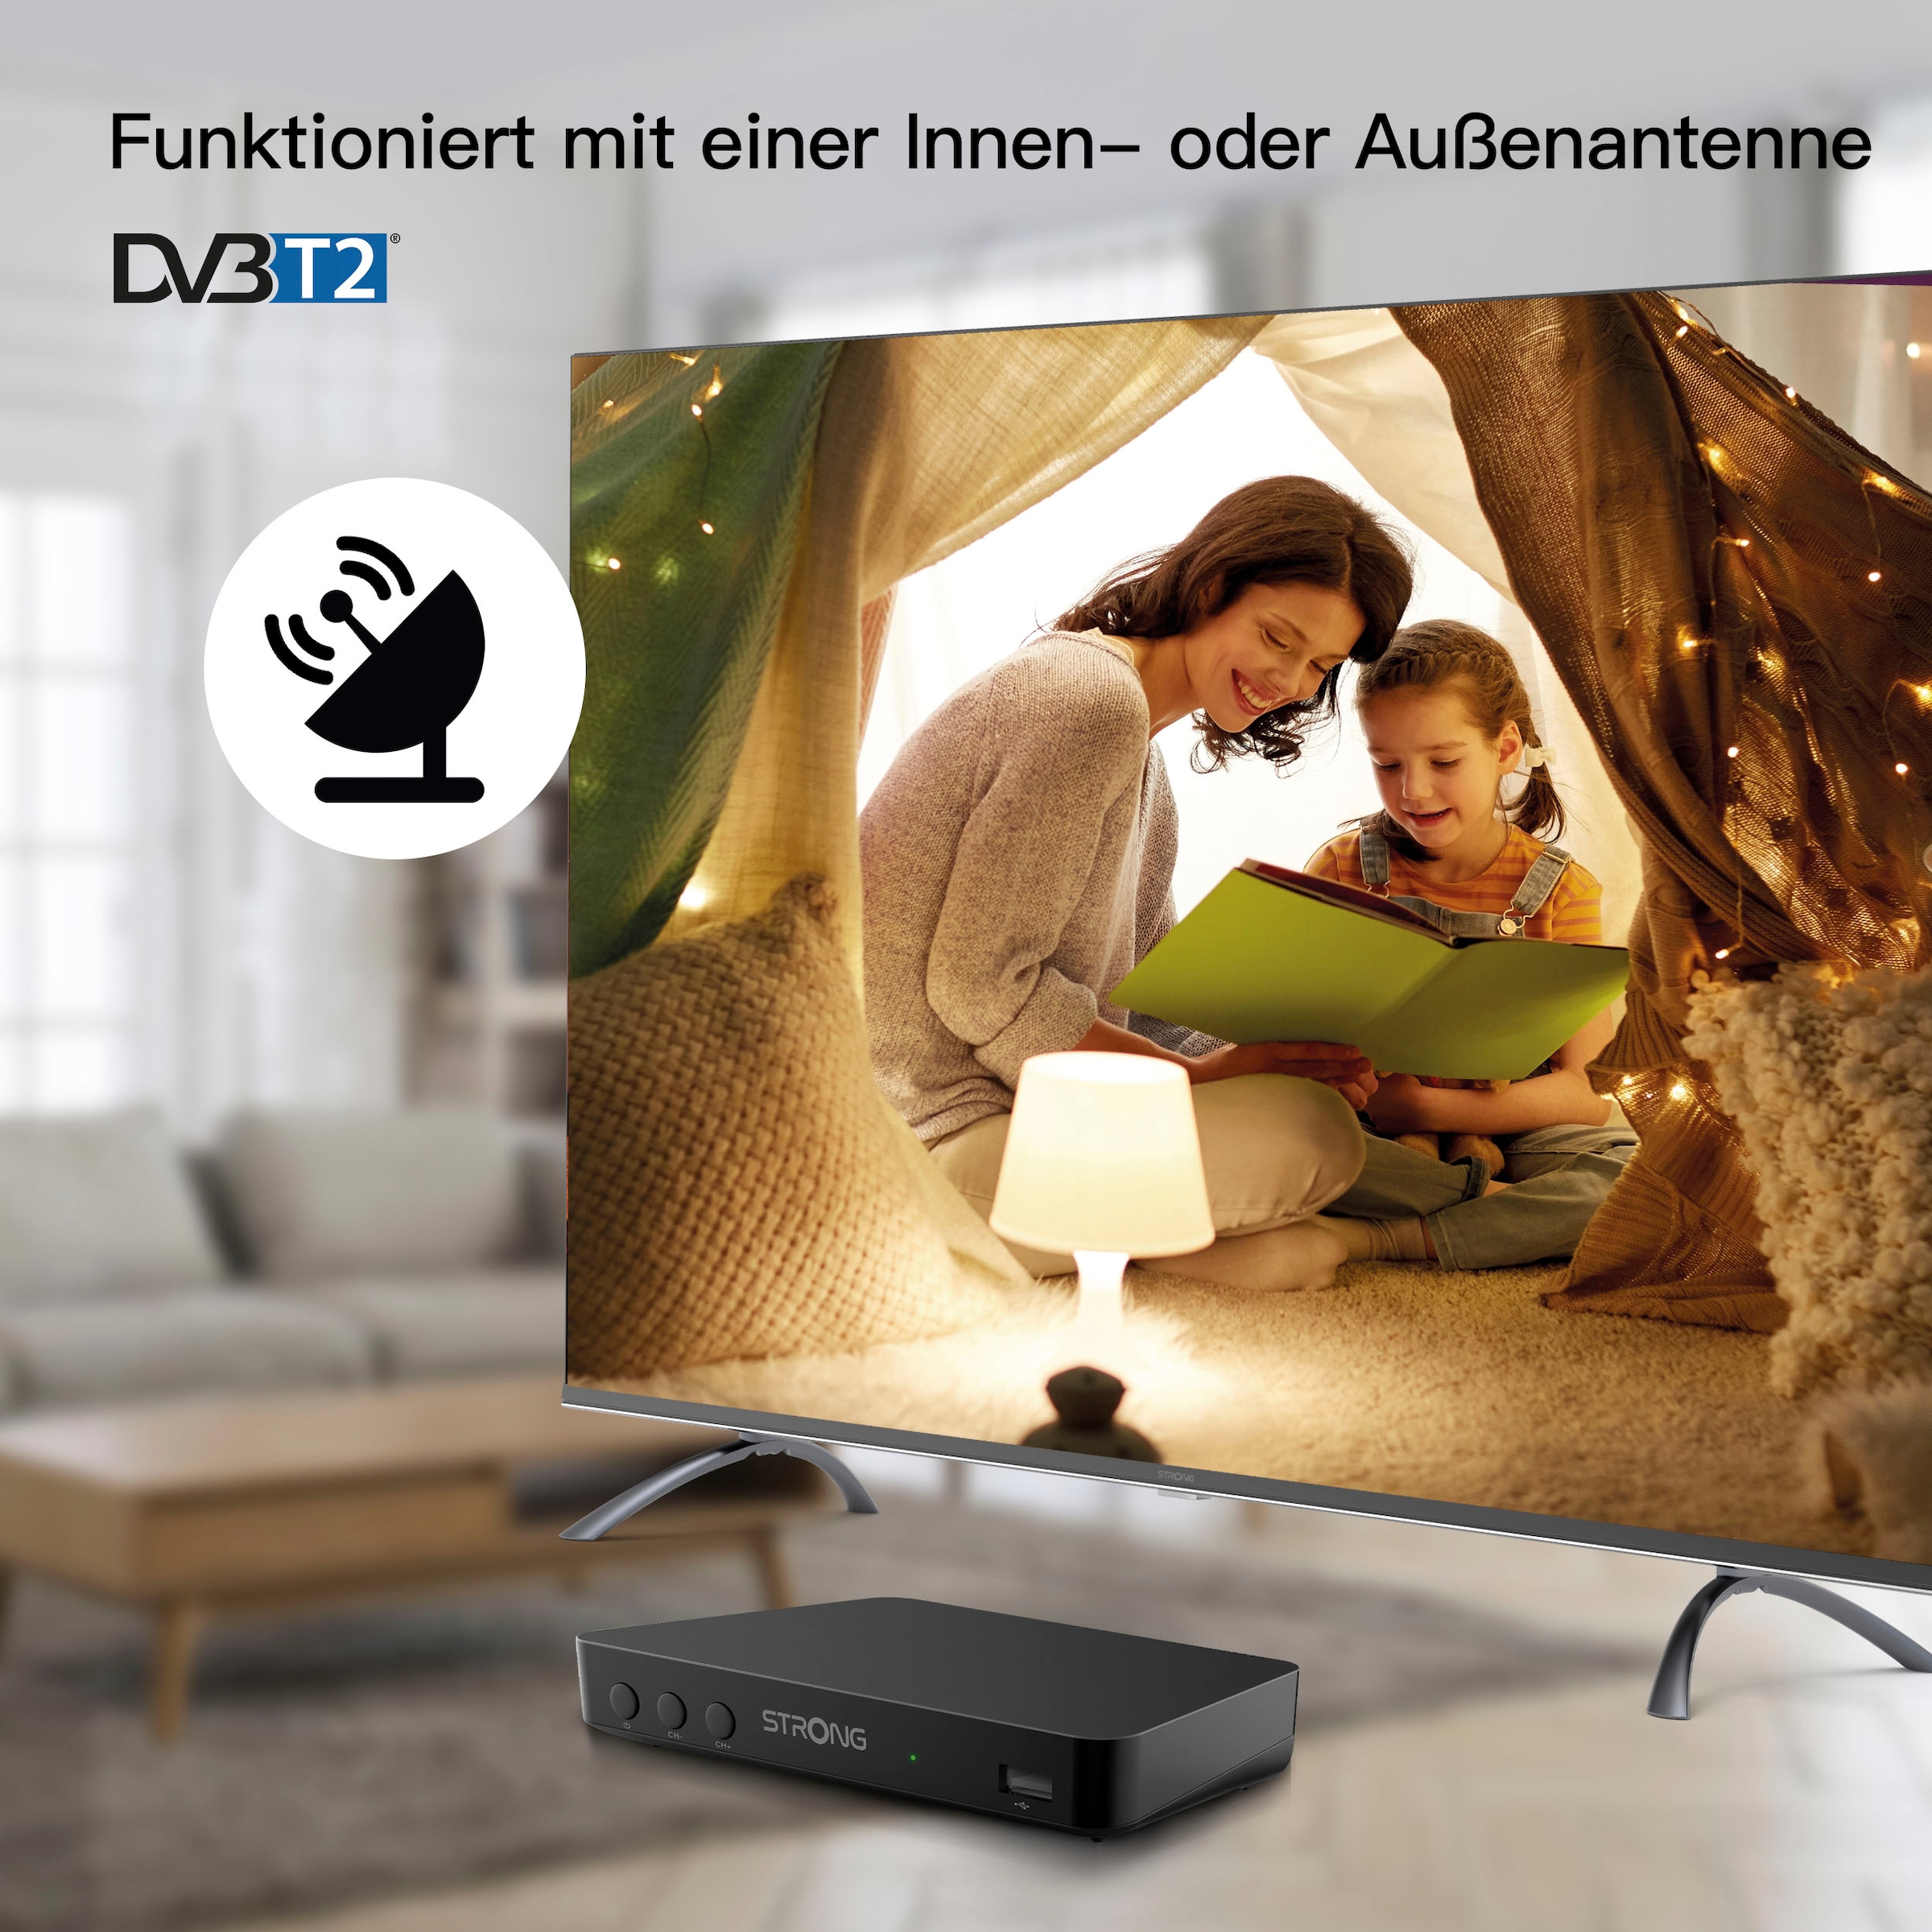 Strong DVB-T2 HD Receiver »SRT 8208«, (USB-Mediaplayer-Time-Shift-EPG (elektronische Programmzeitschrift)-Automatischer Sendersuchlauf-Kindersicherung)